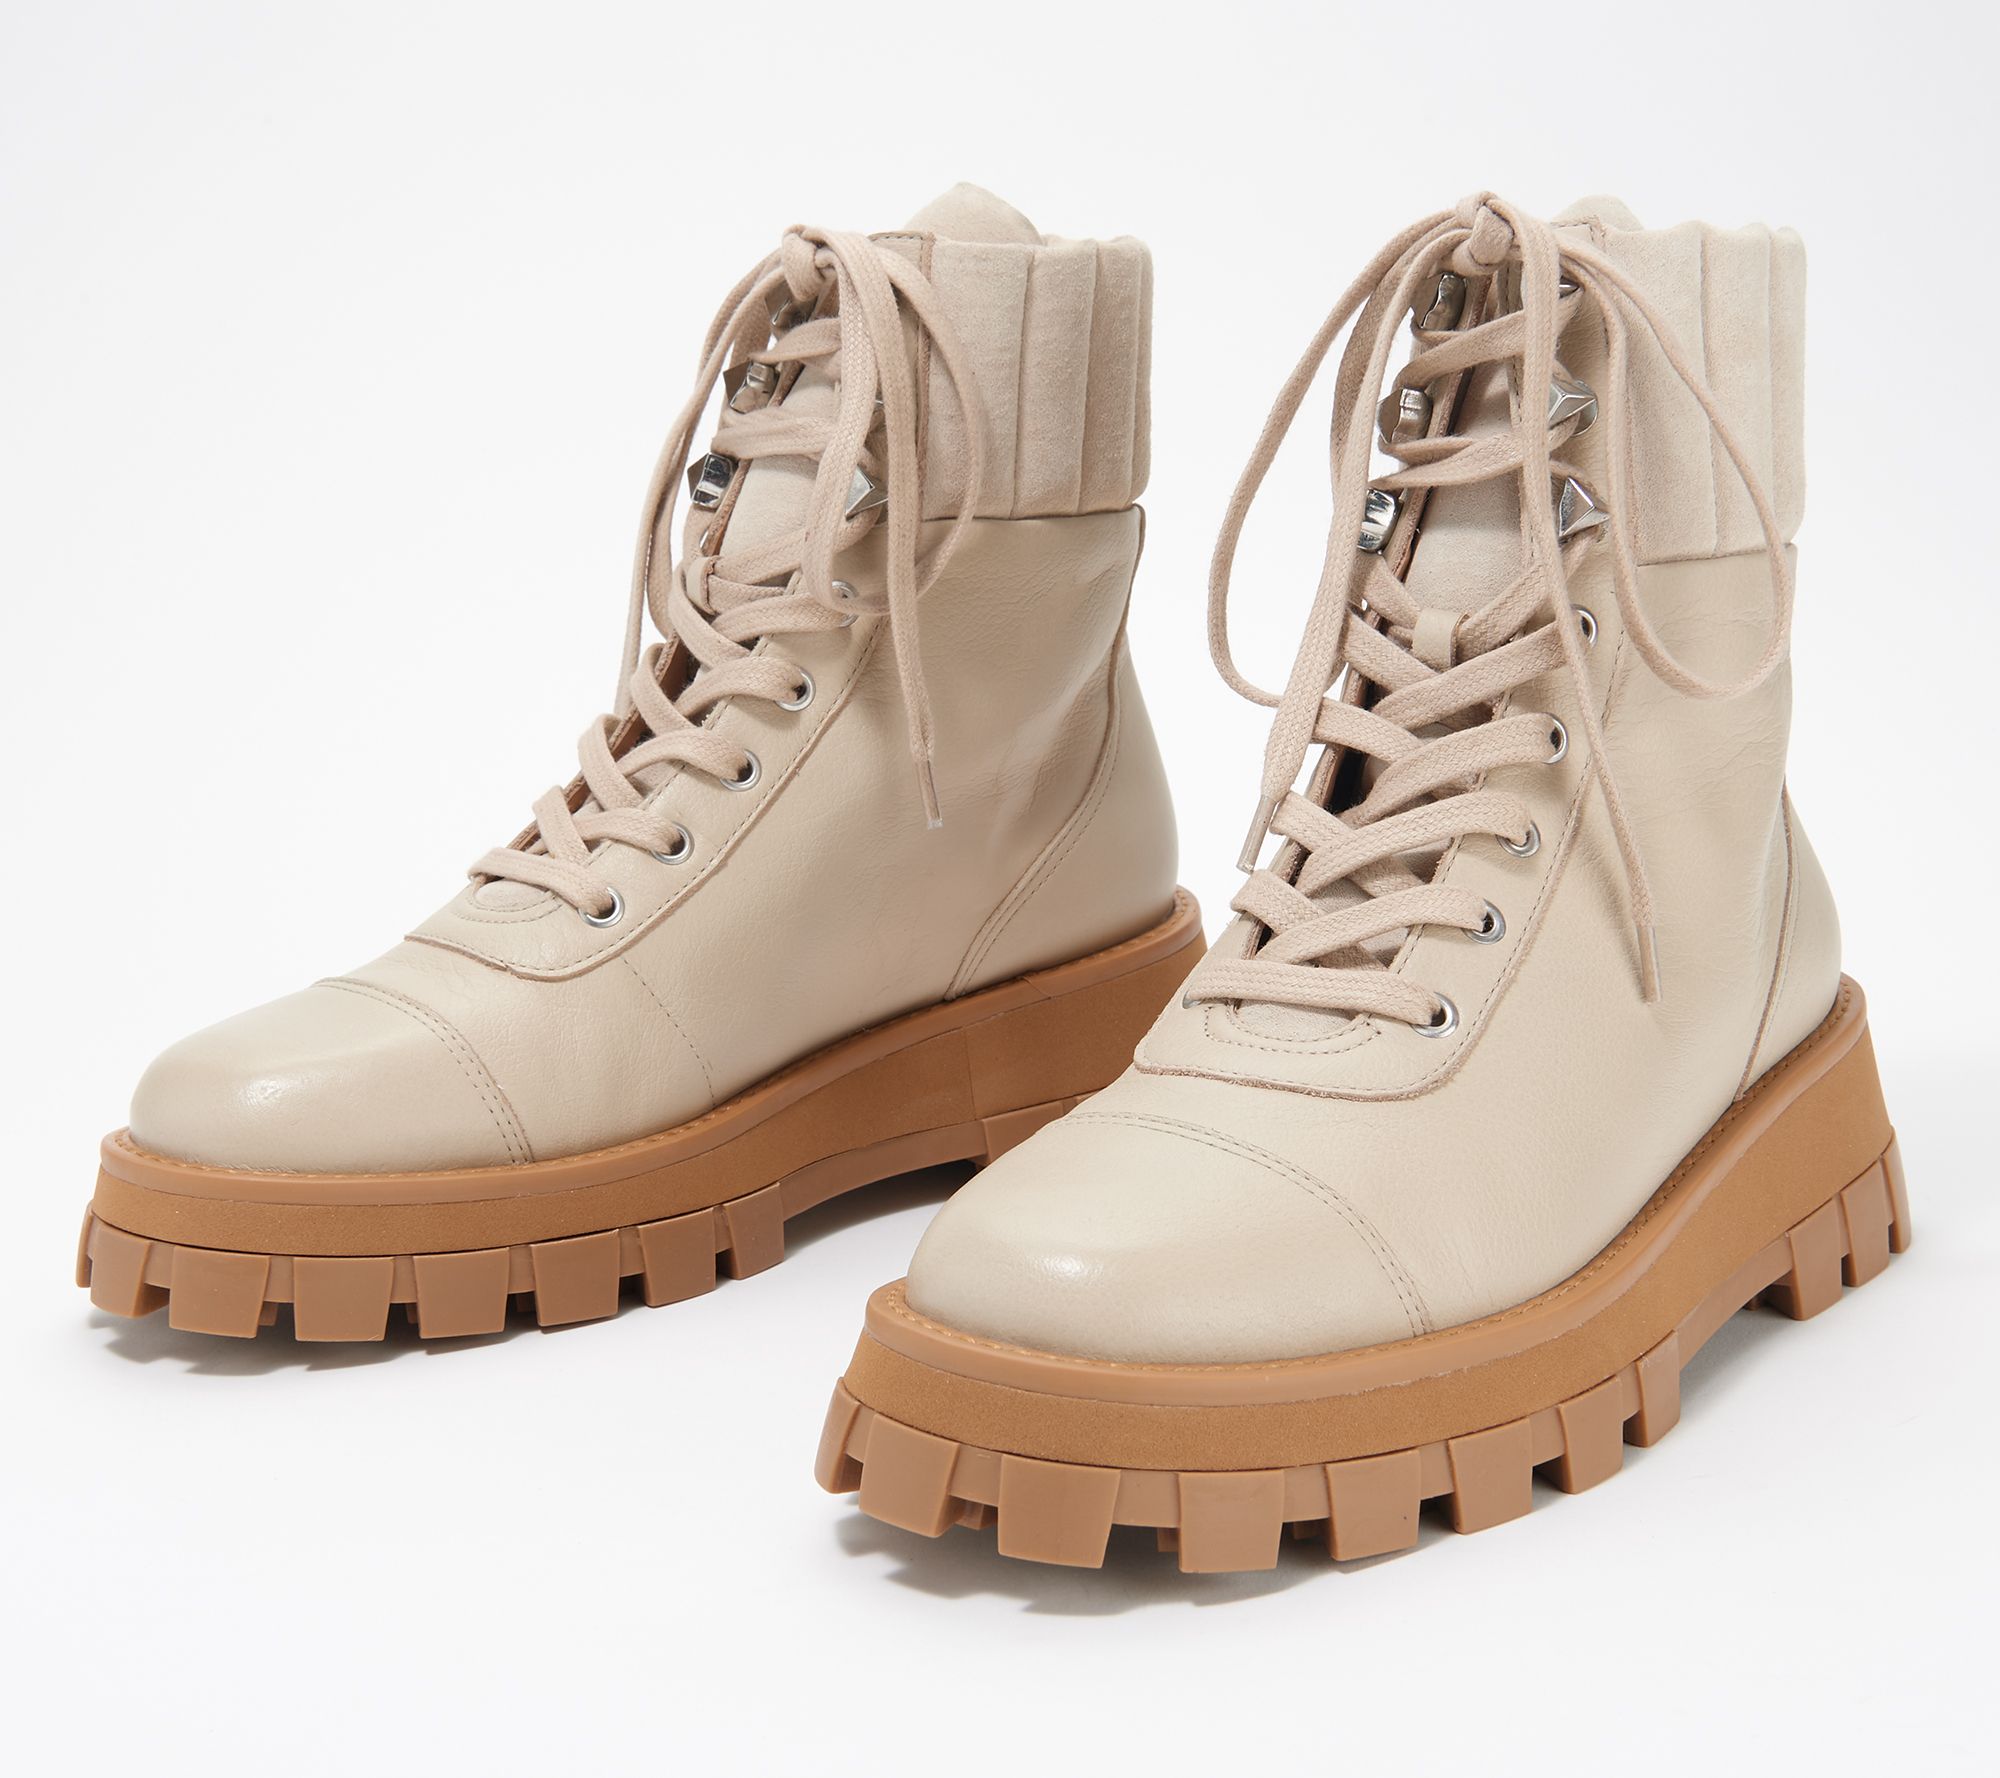 Schutz Leather Lace Up Hiker Boots - Sutton - QVC.com